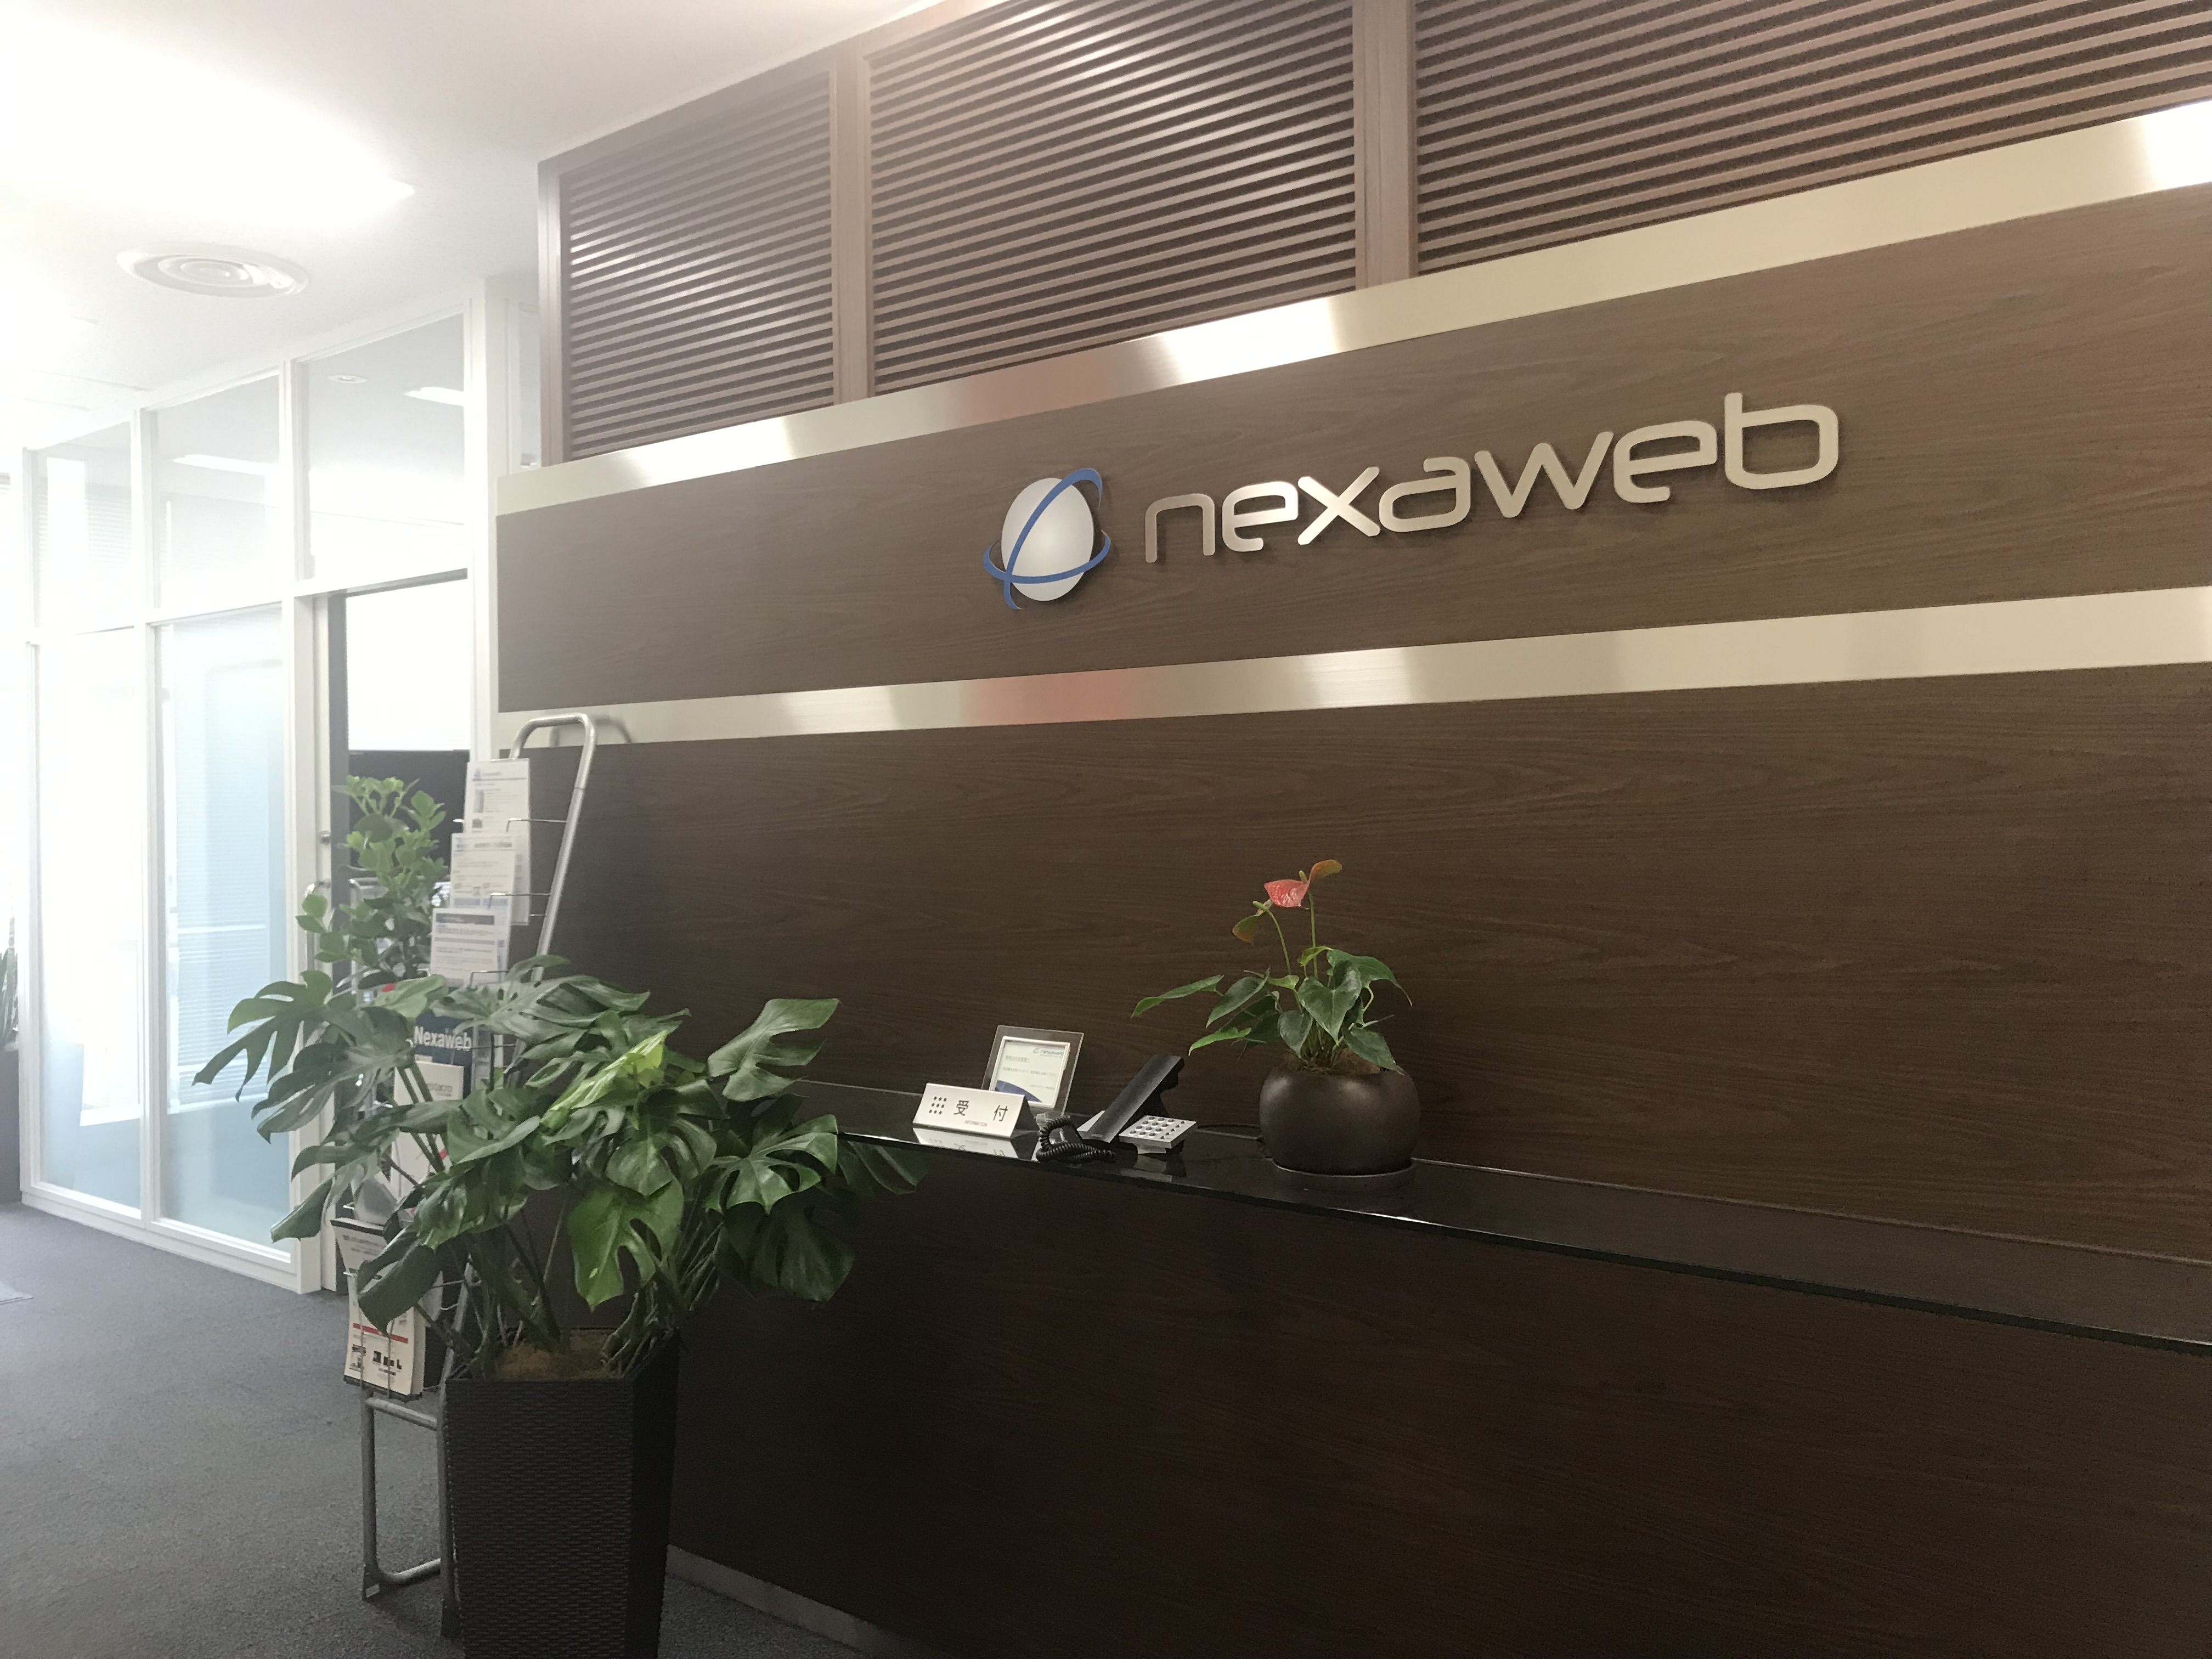 nexaweb_entrance